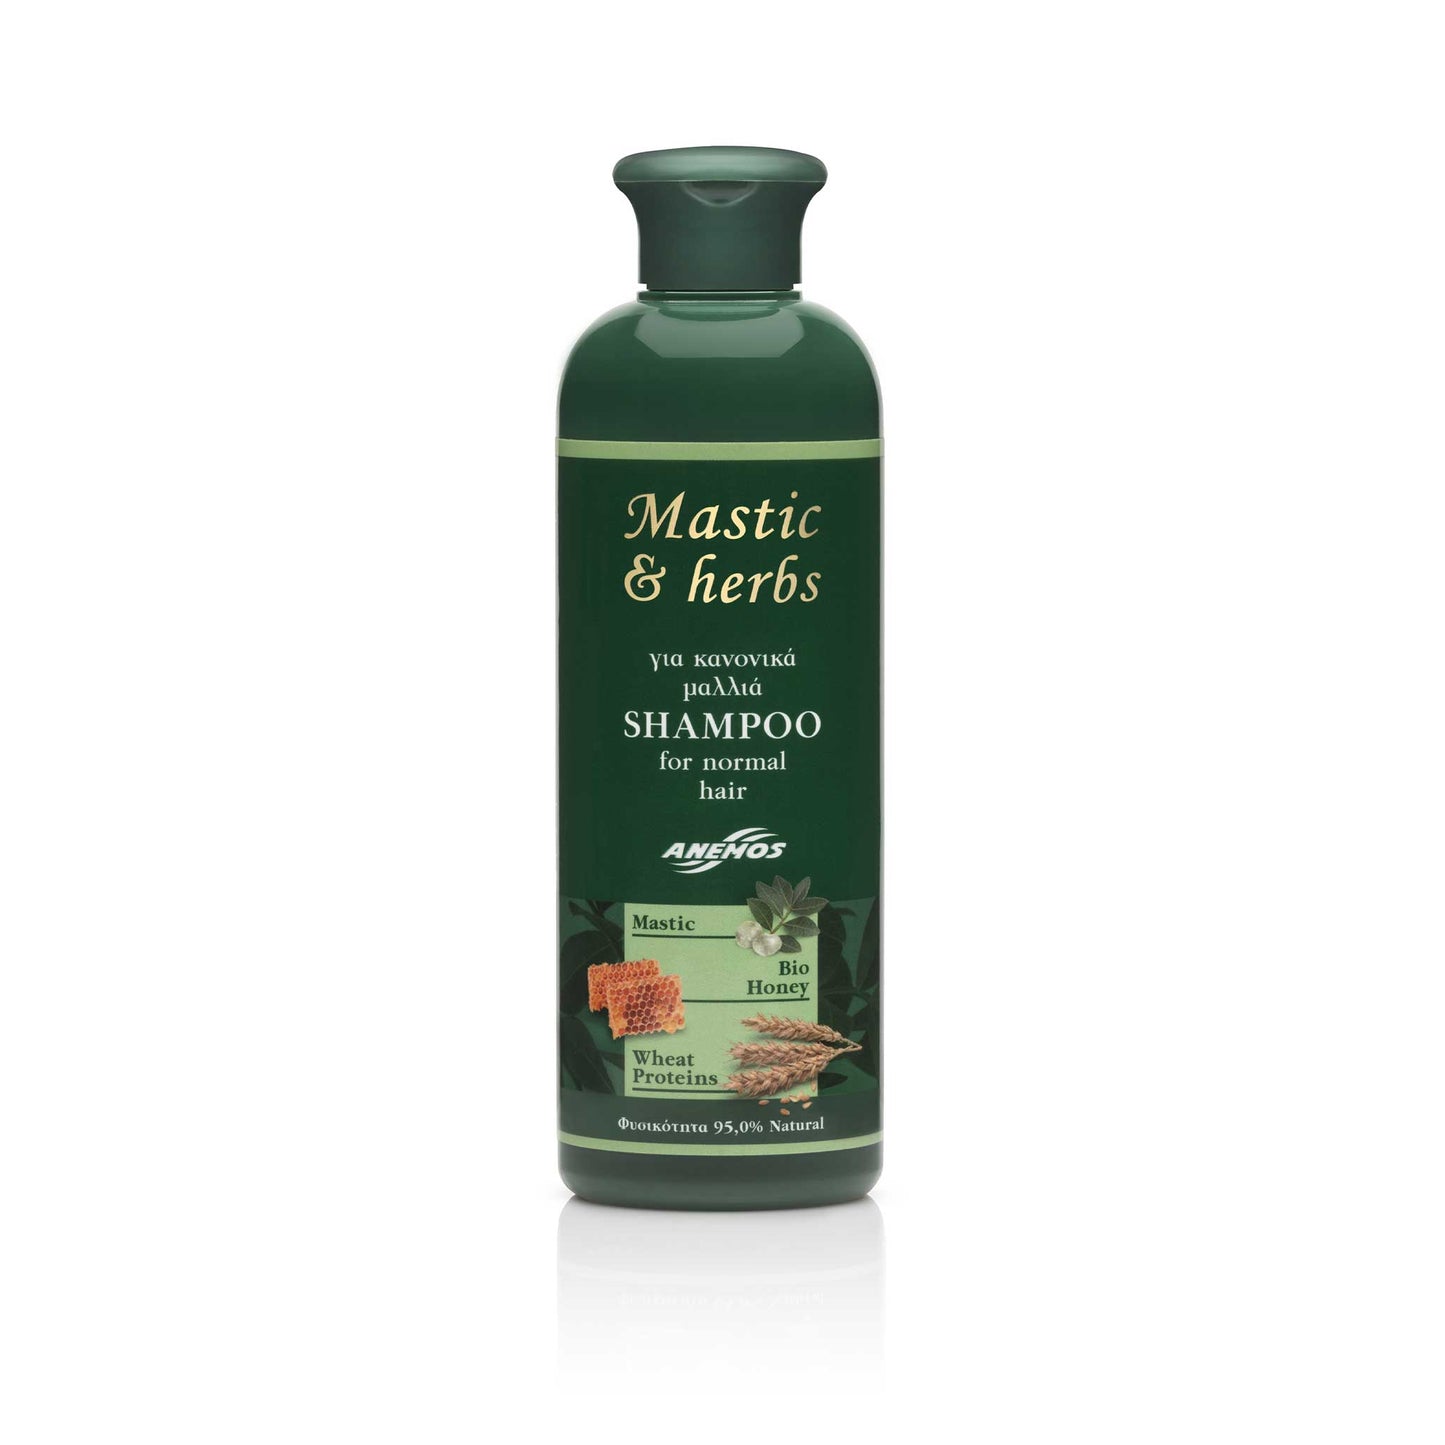 Šampon pro normální vlasy 300 ml, Mastic & Herbs mastichový olej